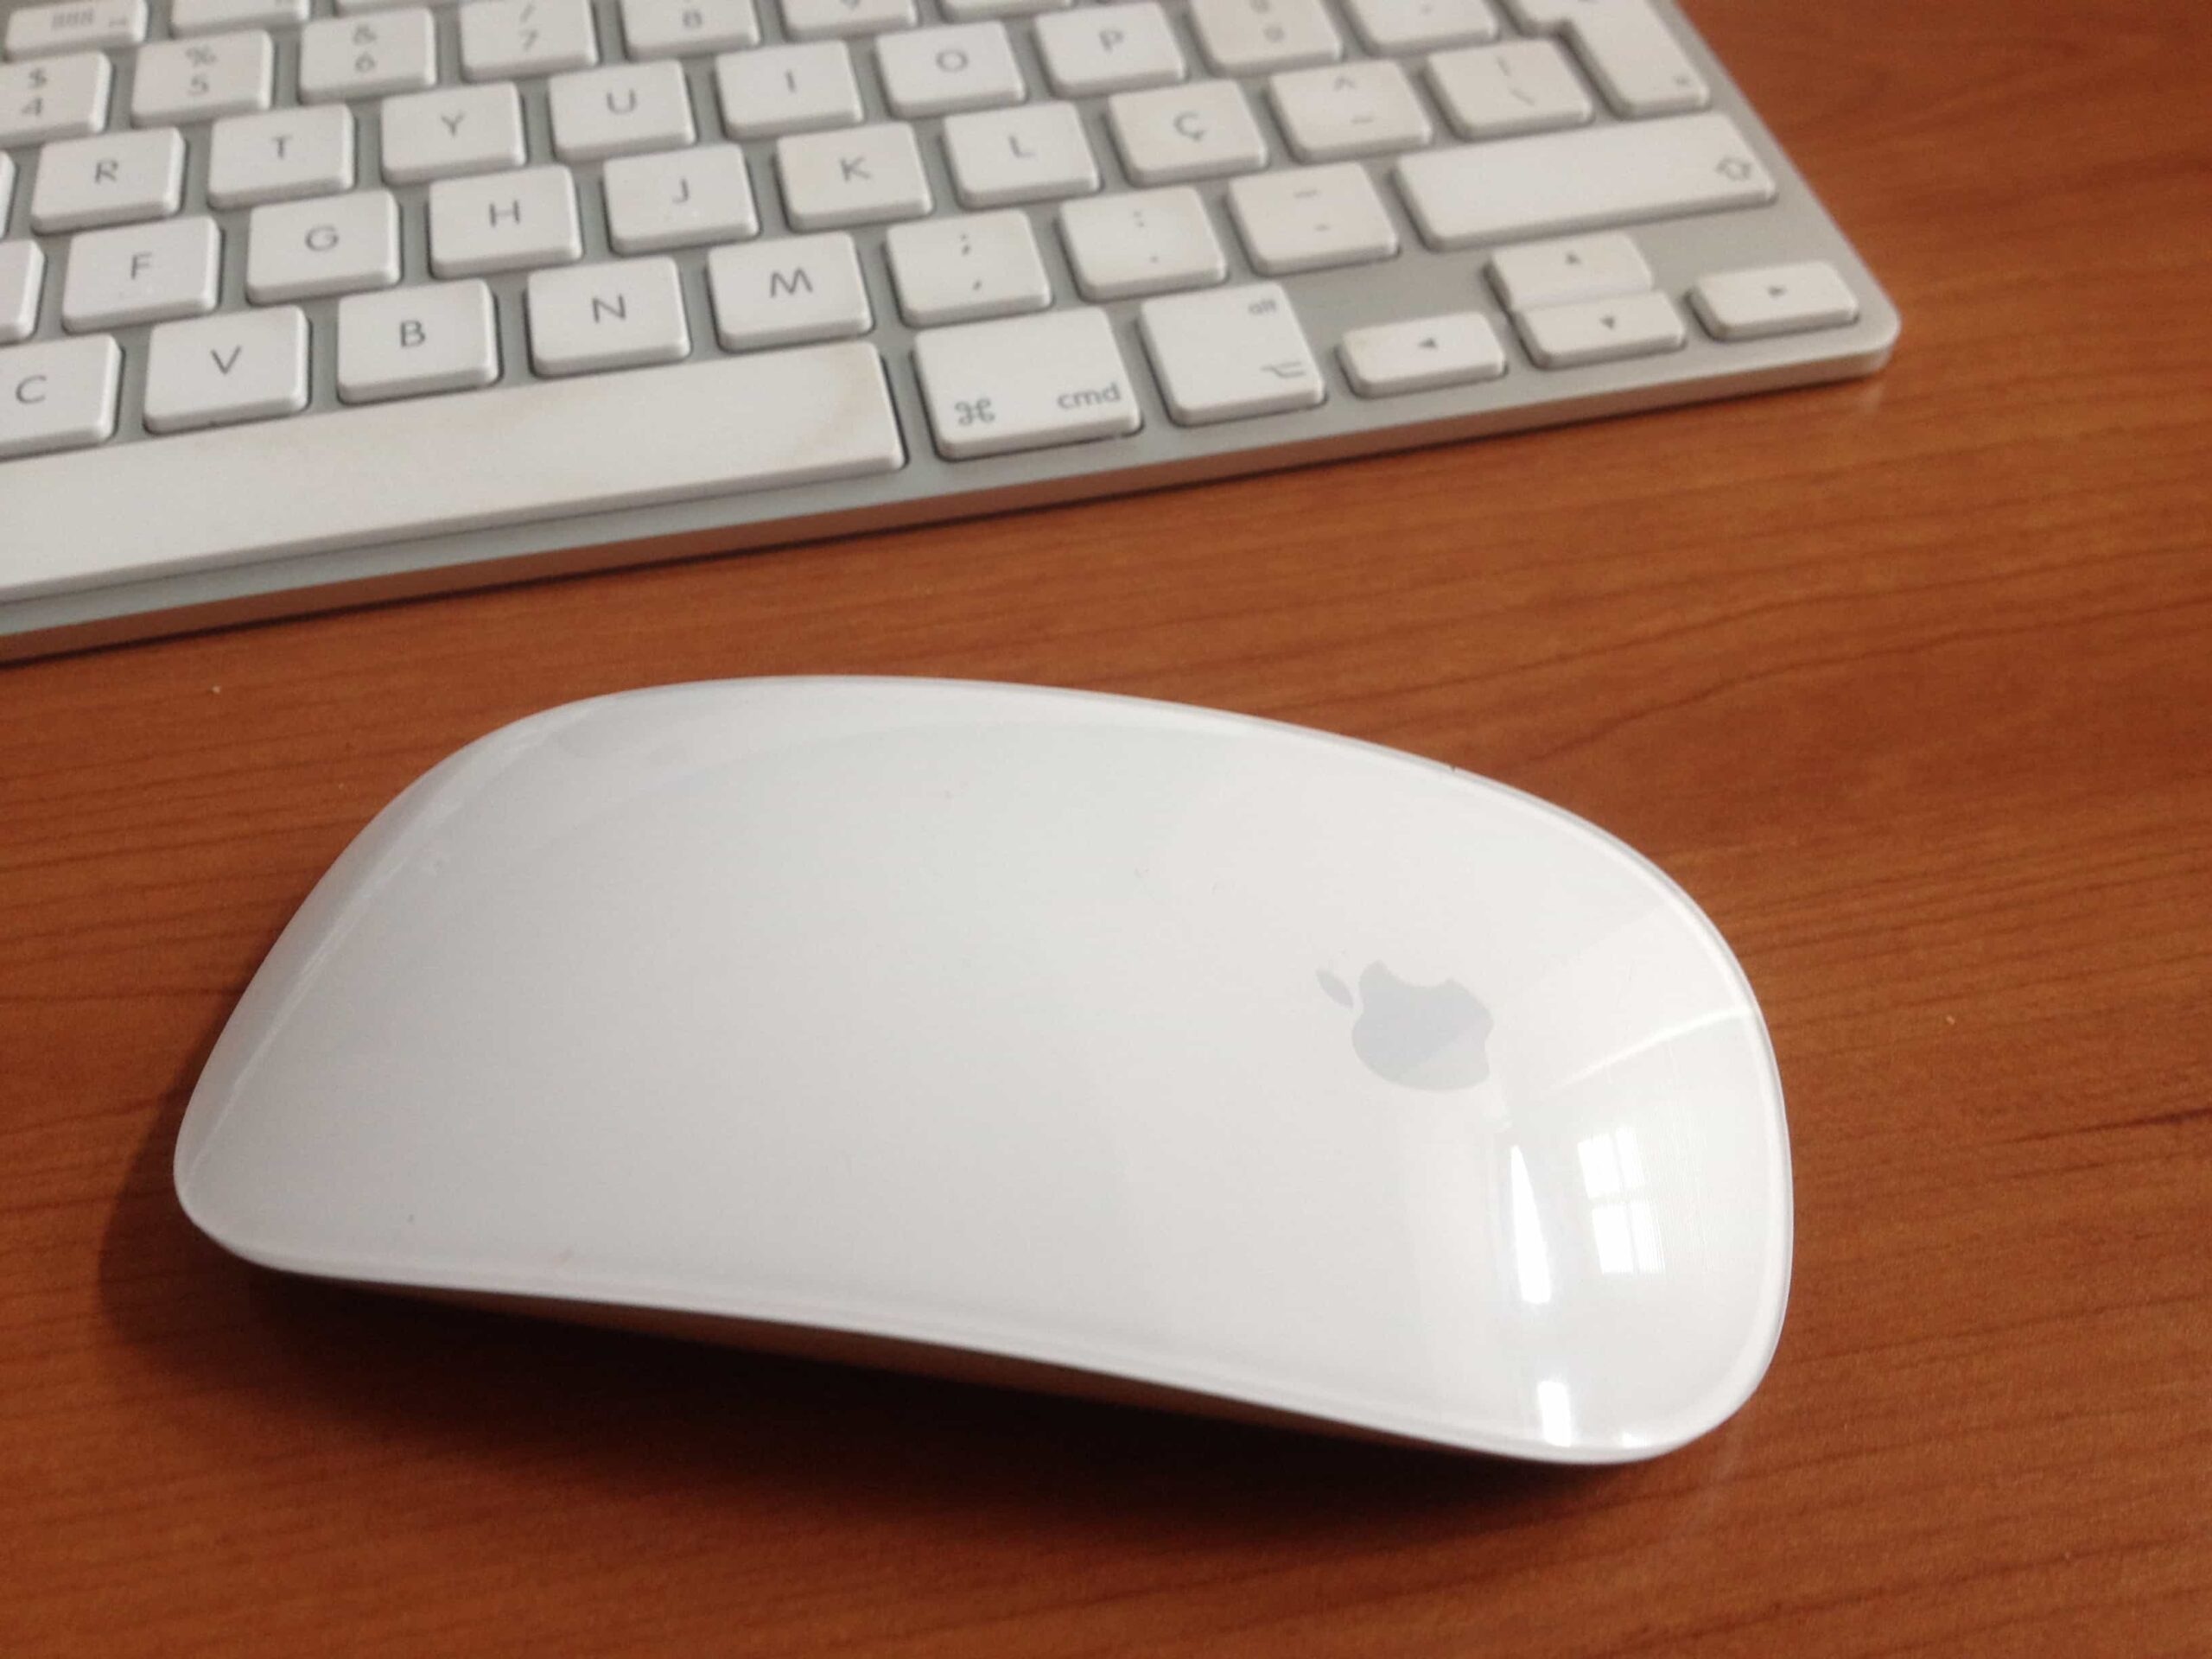 apple magic mice for Mac